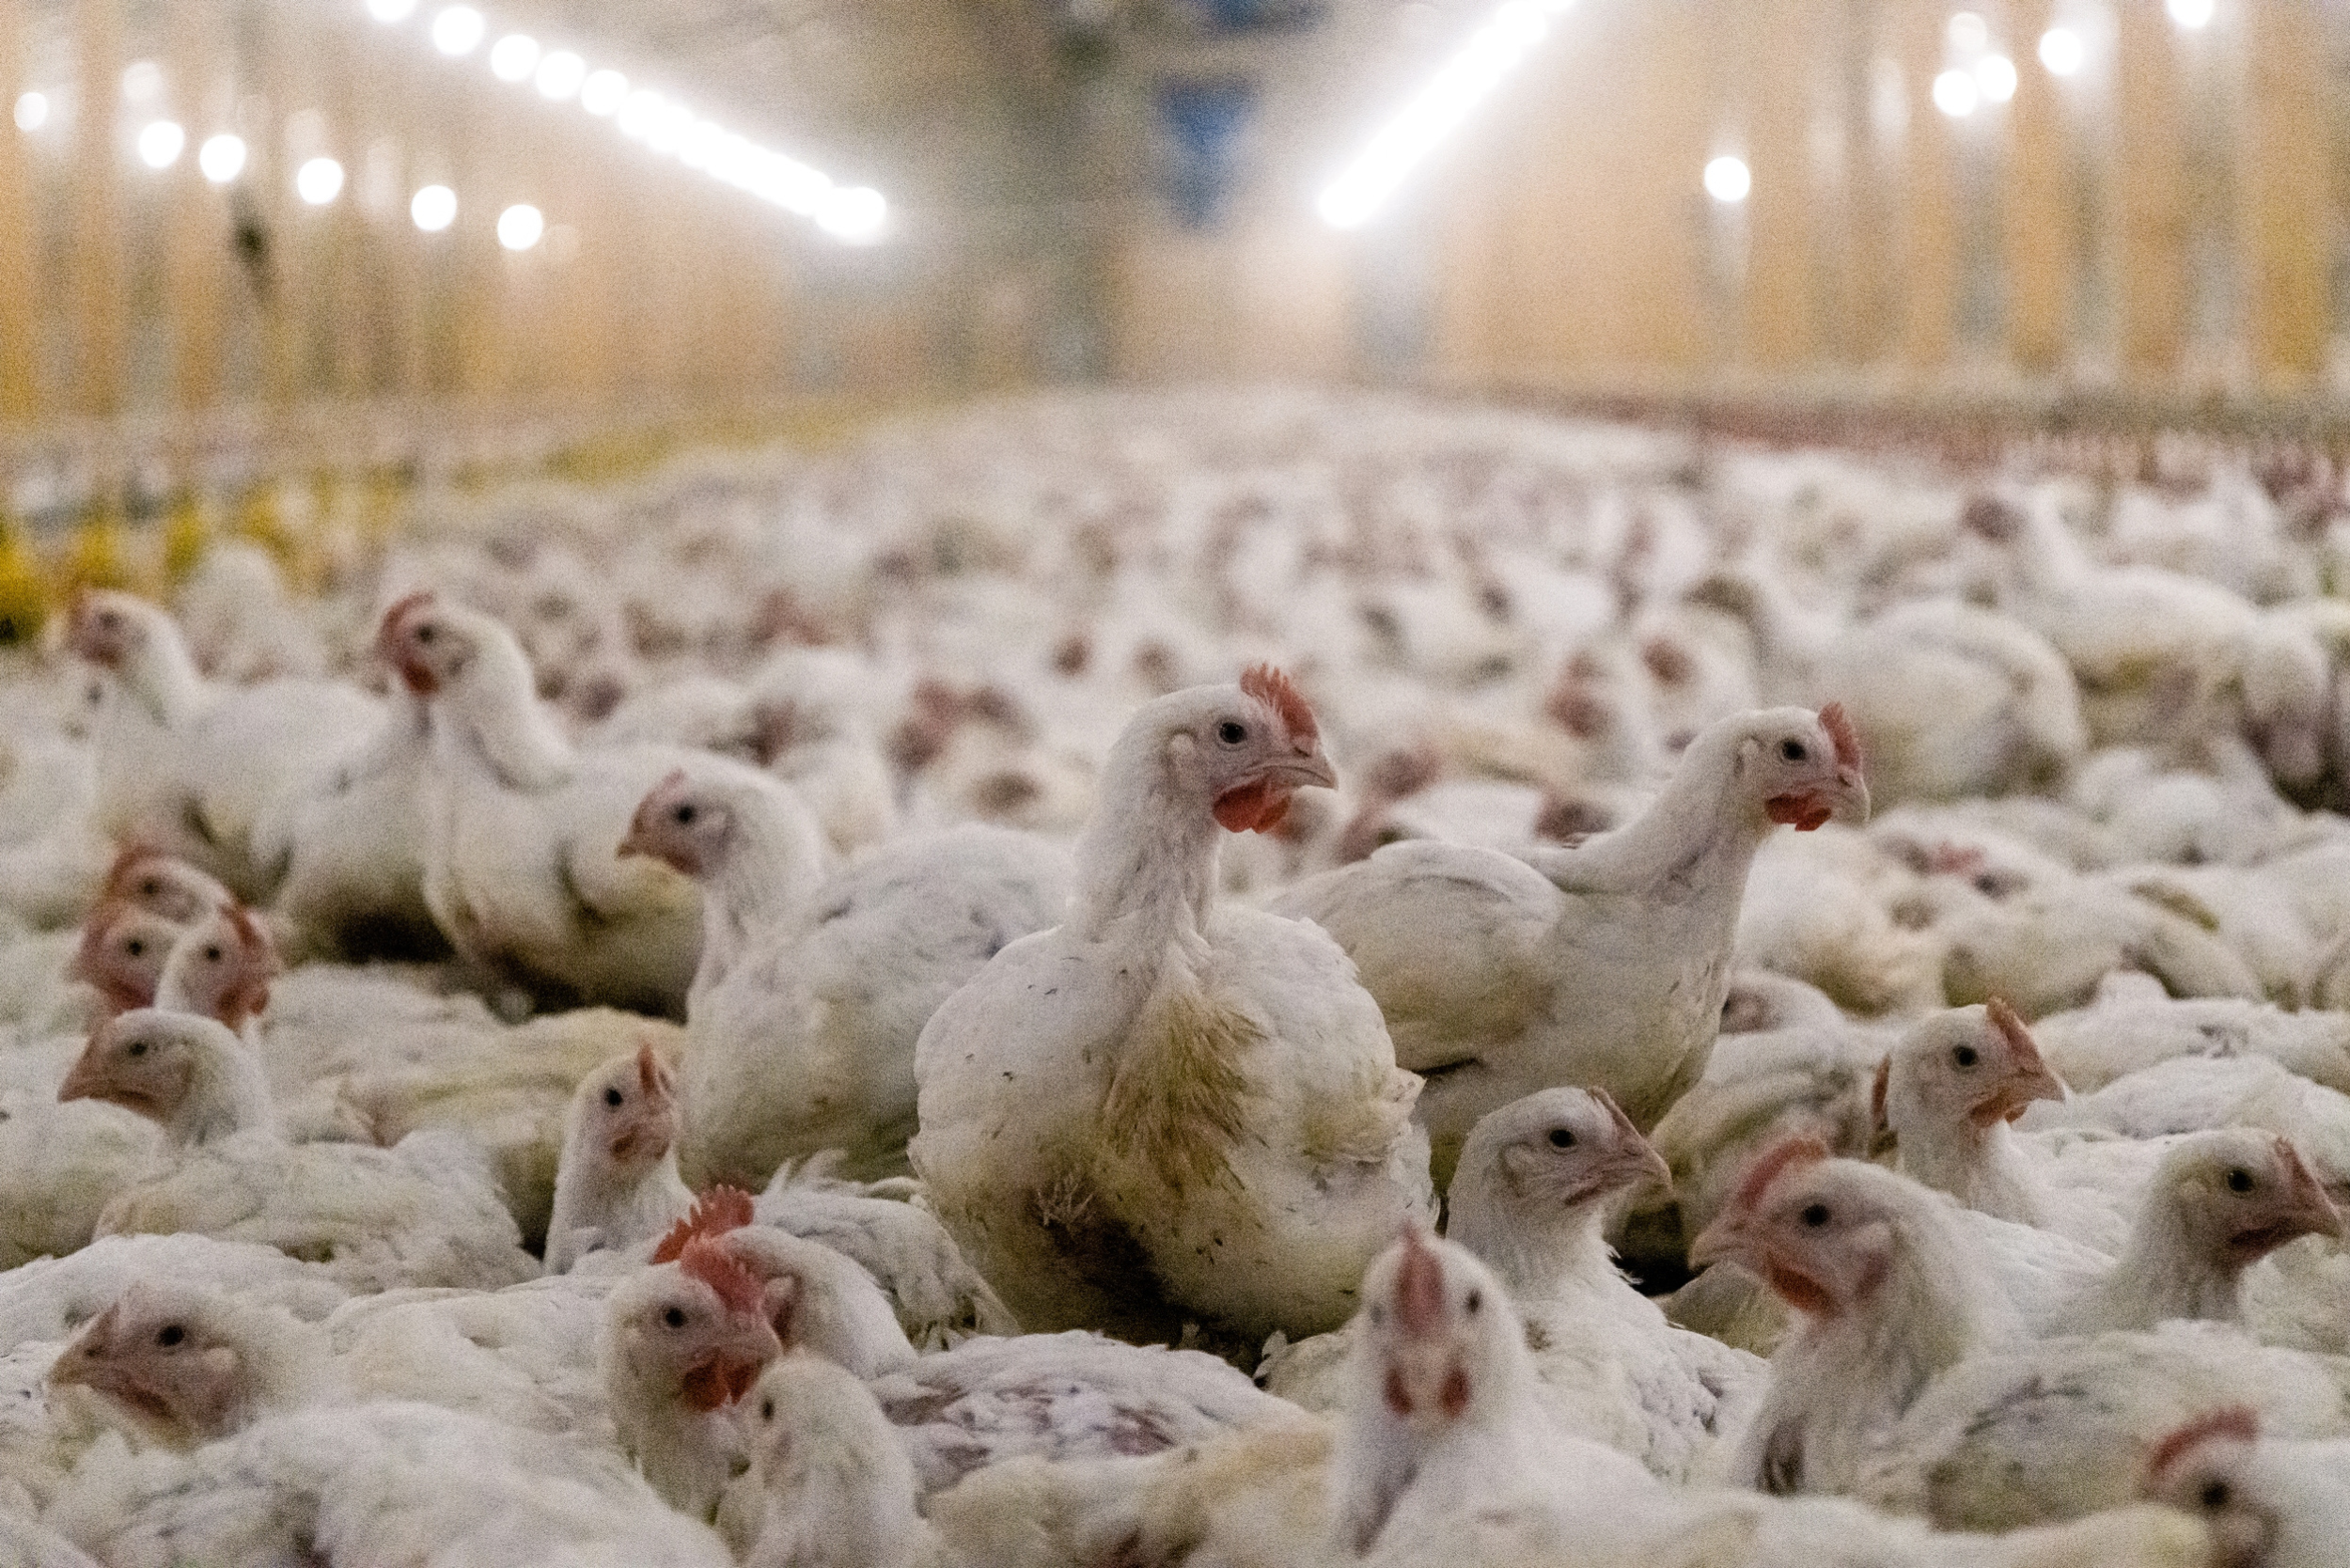 Un pollo mira con ansiedad en medio de un grupo de pollos hacinados en una granja industrial.